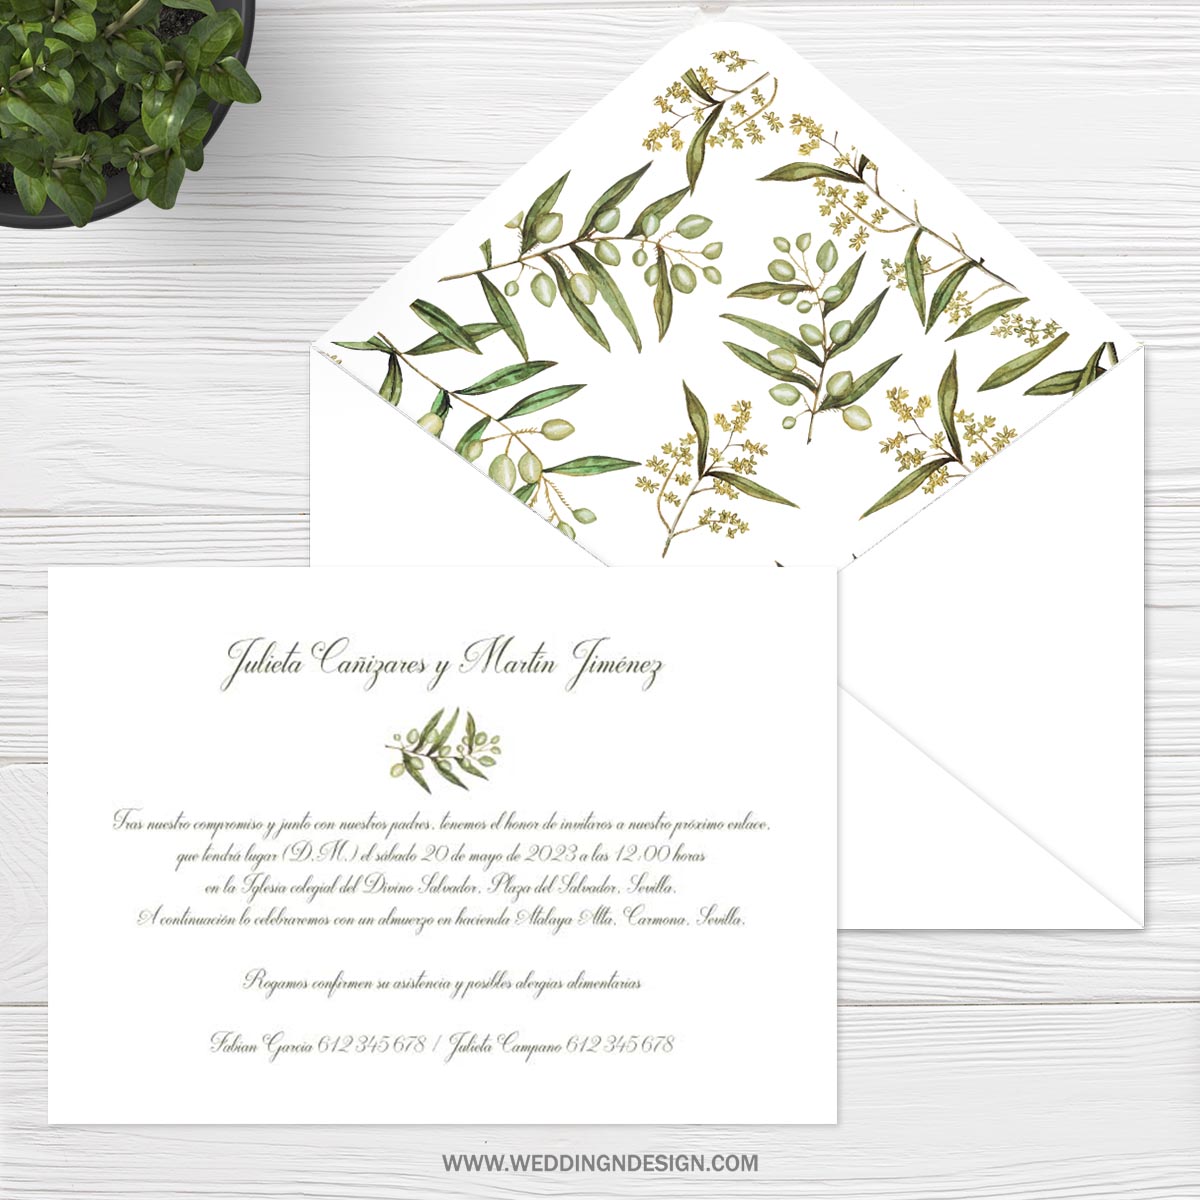 Invitaciones ramas de olivo | Invitación Jaén | Wedding & Design